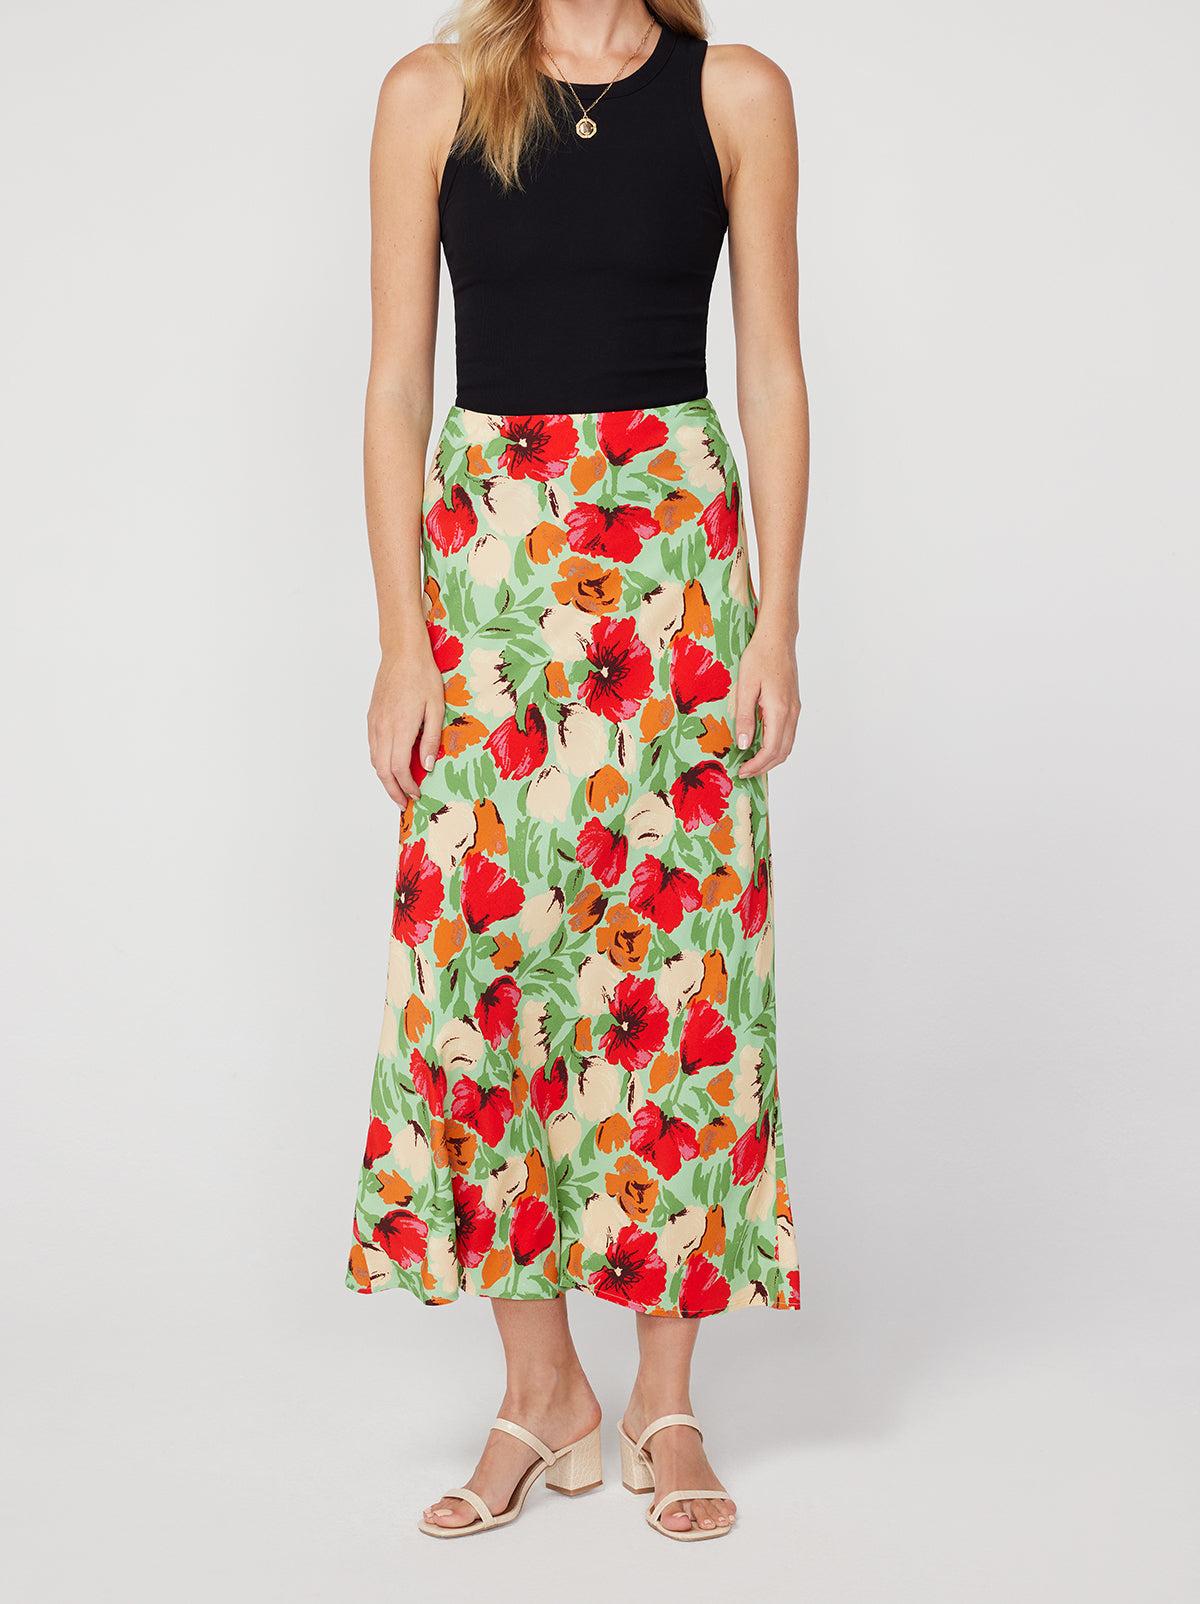 Layla Green Garden Floral Skirt